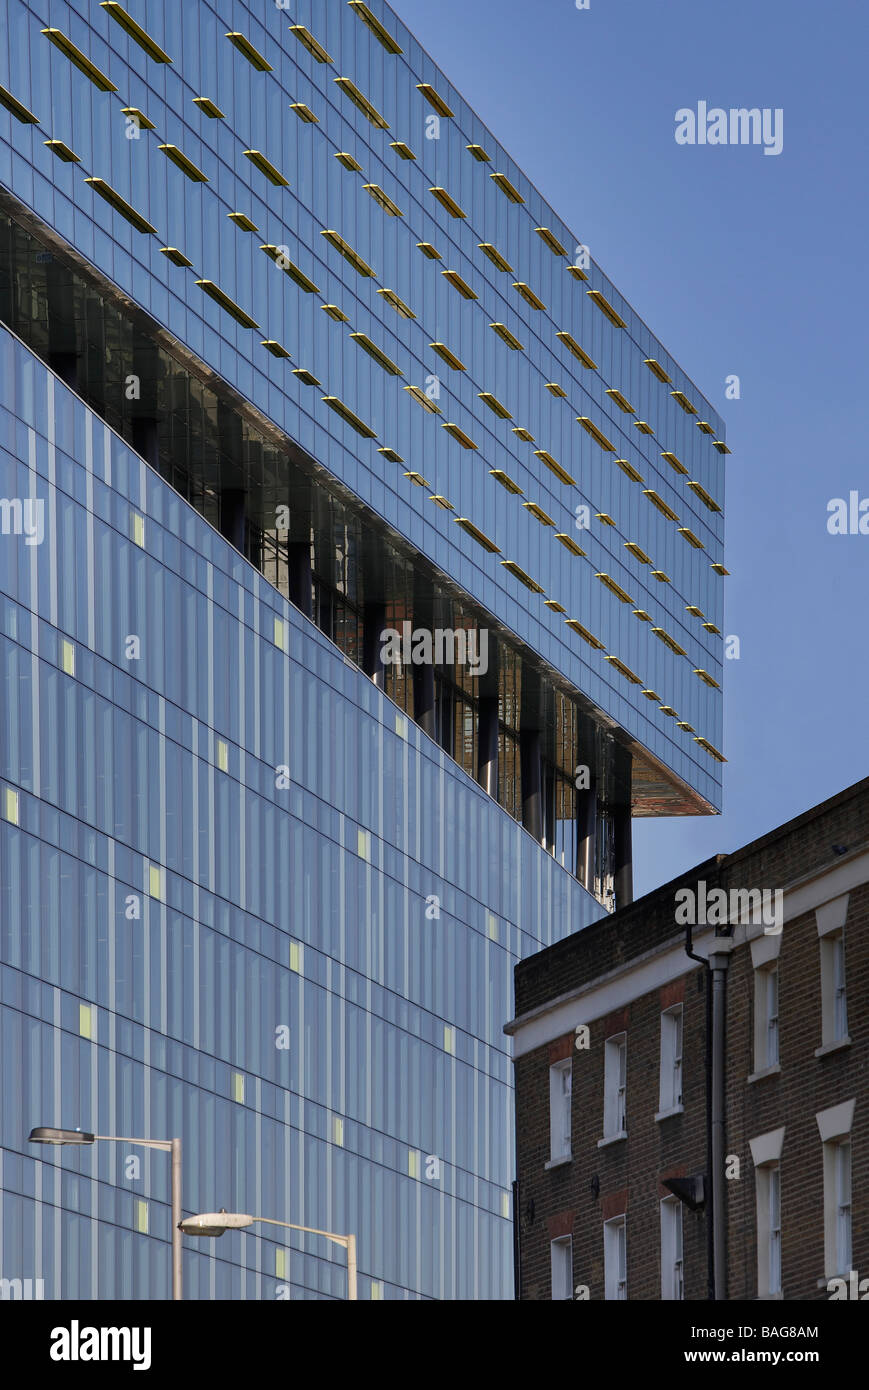 Palestra, Londres, Reino Unido, Alsop Architects Limited, Palestra detalle con los edificios existentes. Foto de stock